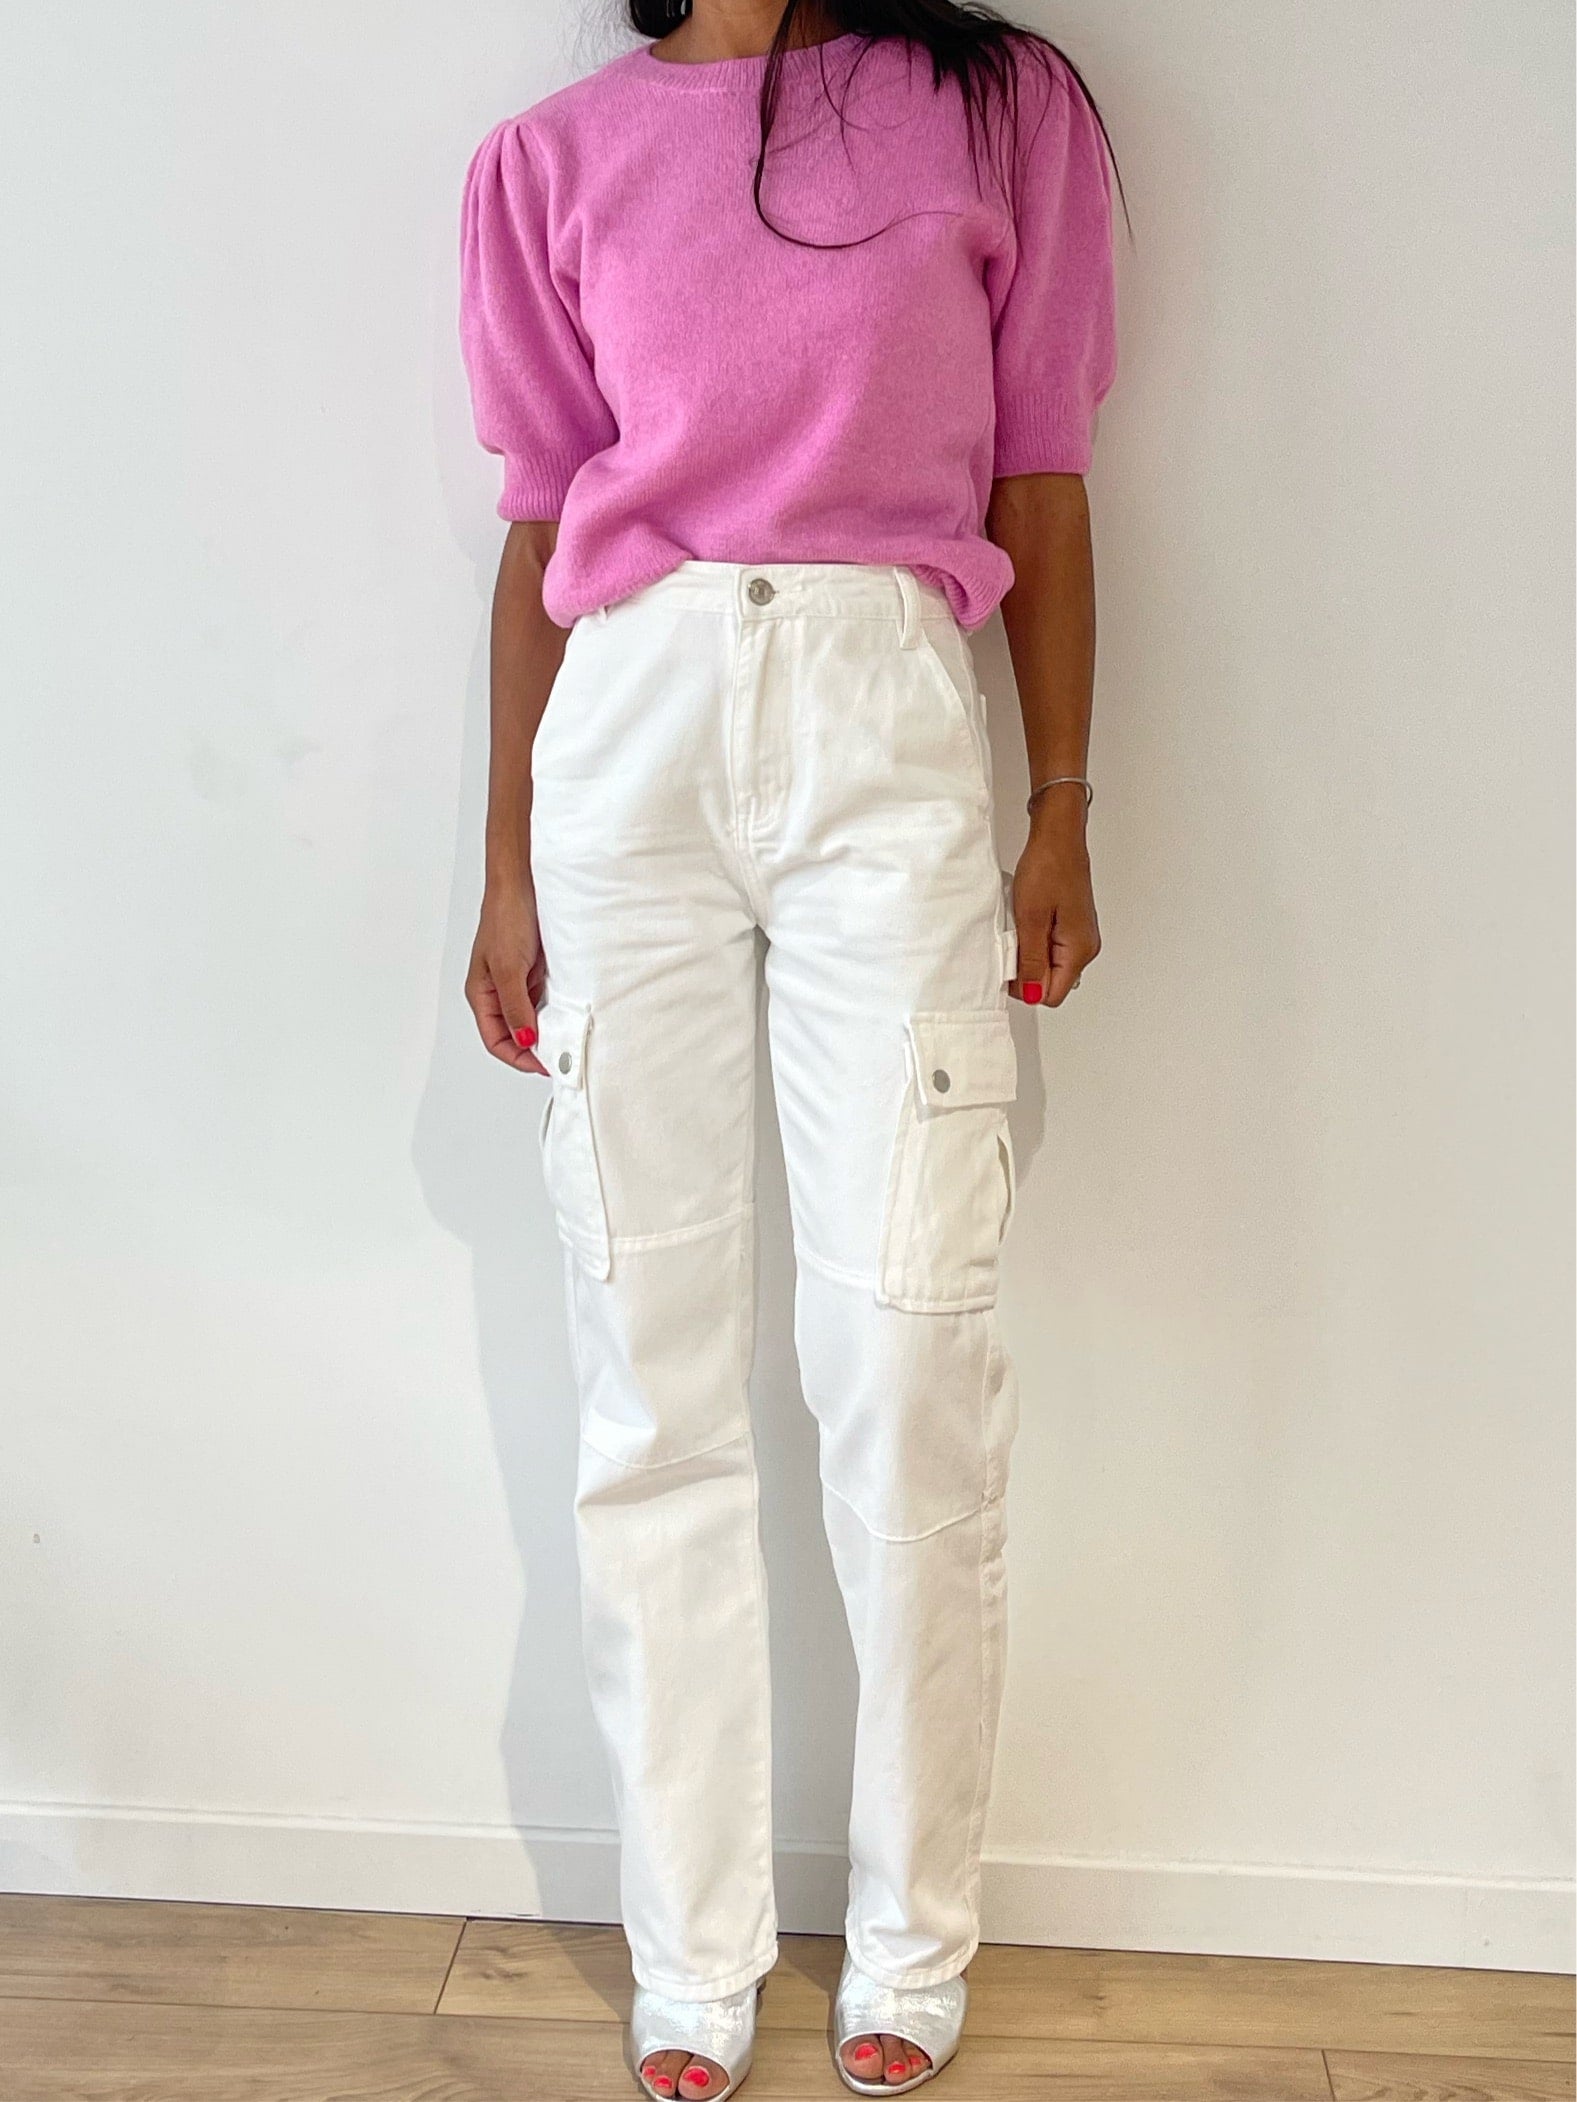 Pantalon cargo blanc pour femme assorti à un pull rose